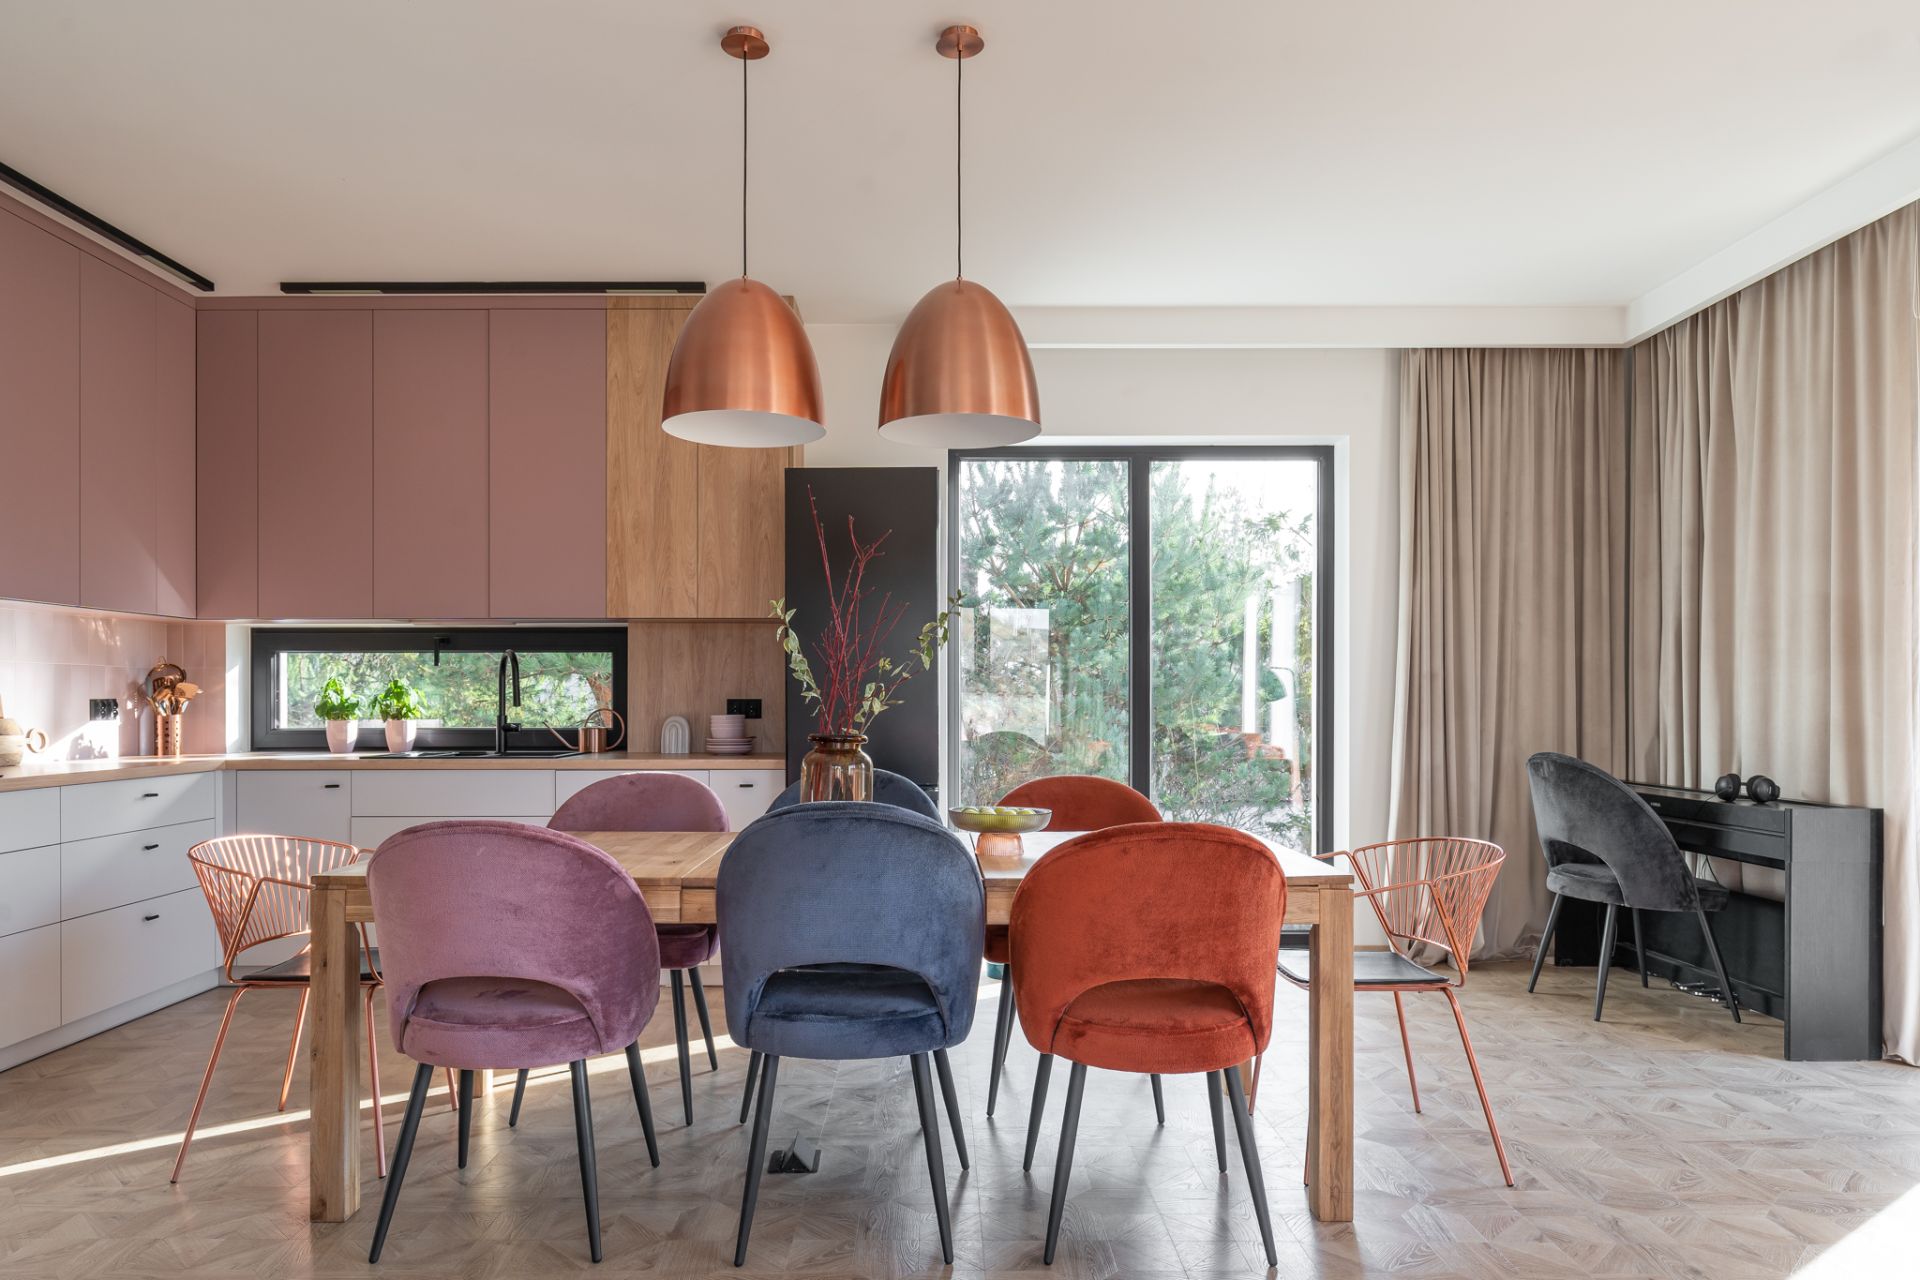 Duży stół i kolorowe krzesła: tak kuchnię od salonu oddzielono w tym domu. Projekt Marta Meresinska, Studio Niebyle. Zdjęcia Natalia Kaczmarek, Inkadr